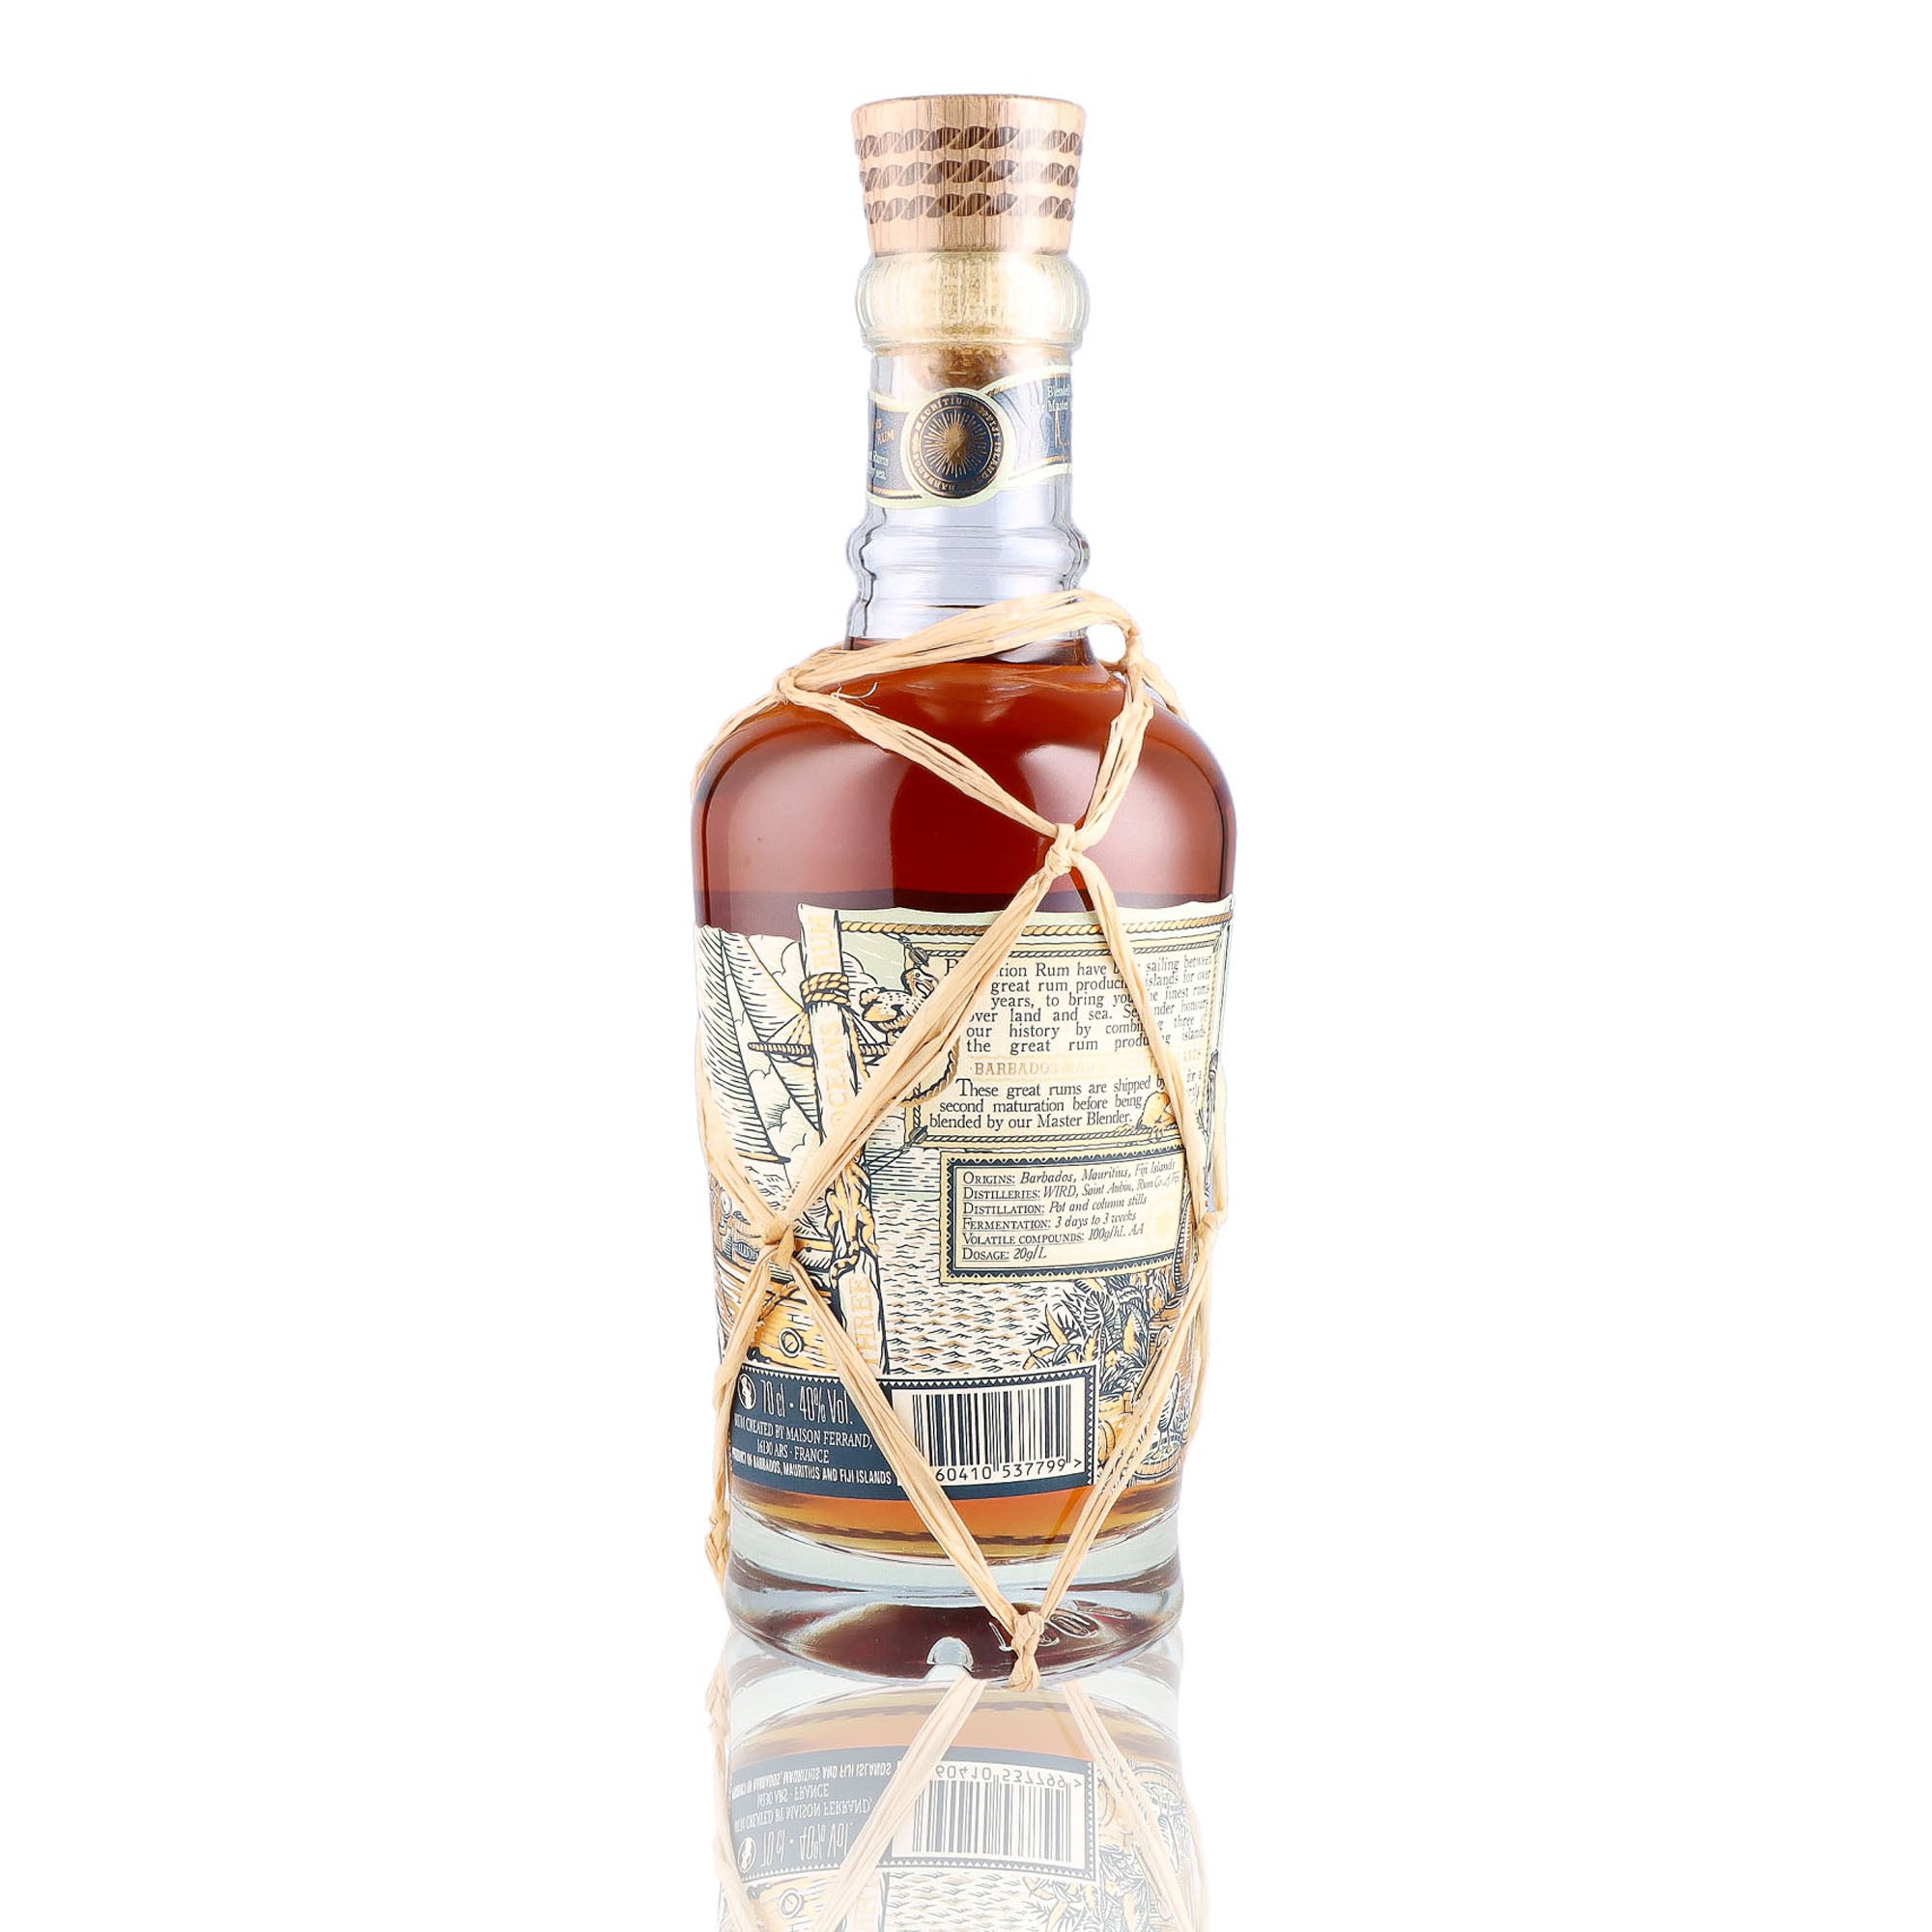 Une bouteille de rhum vieux, de la marque Plantation Rum, nommée 